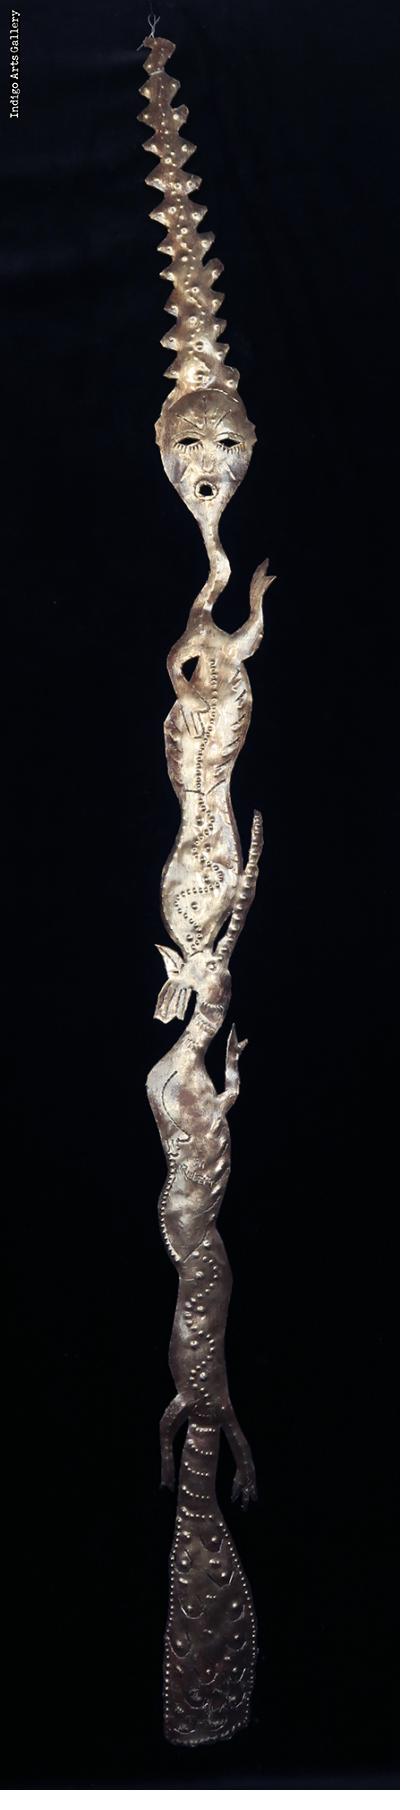 Serpent Spirit Sculpture